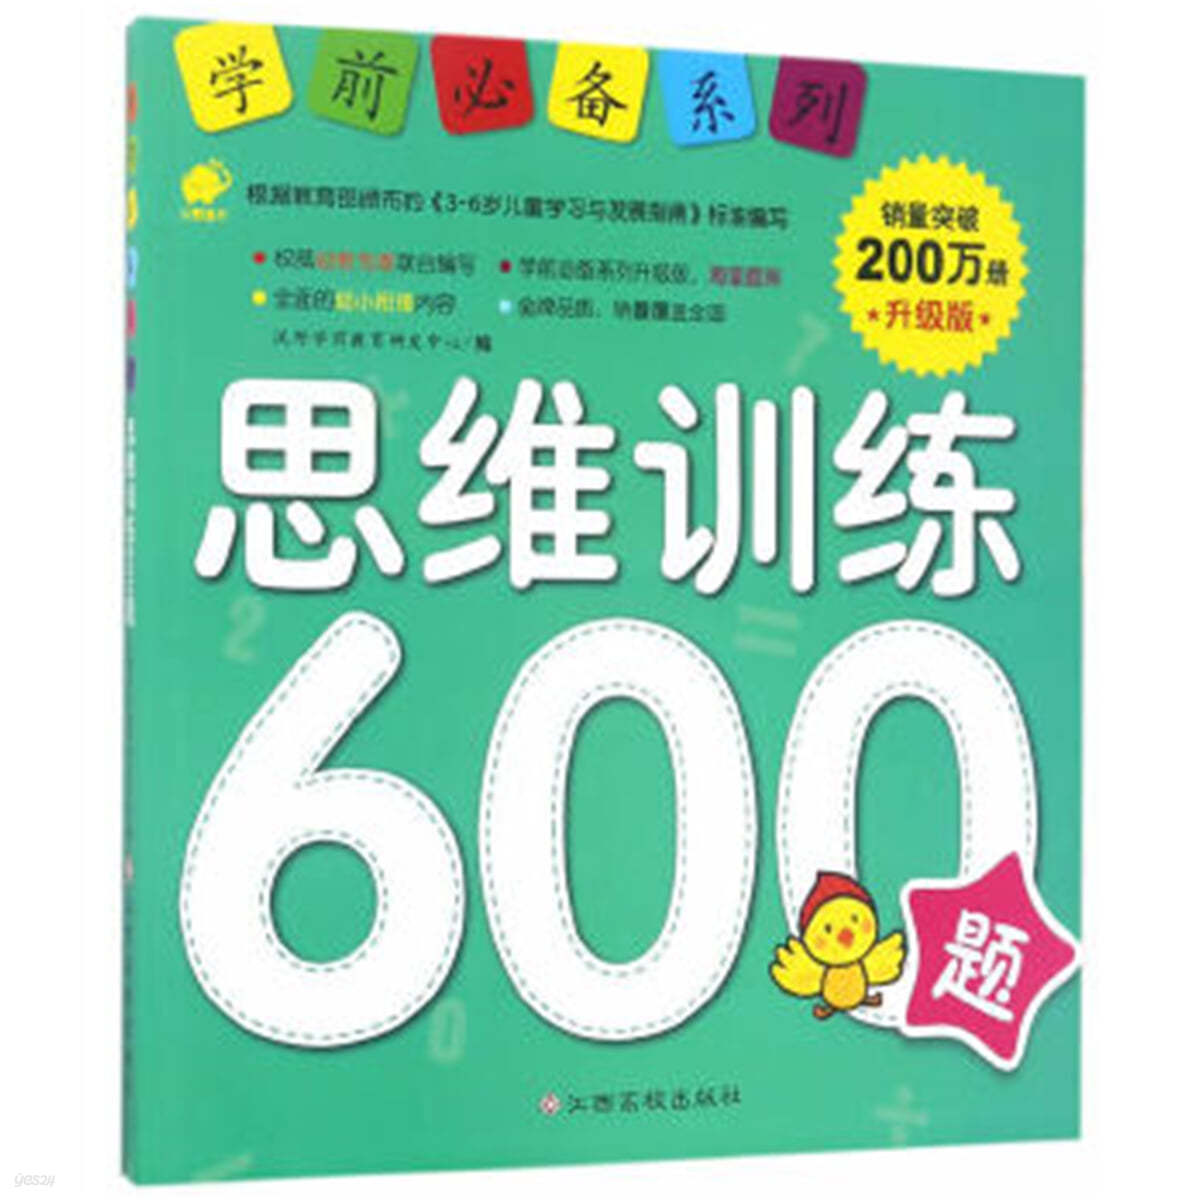 사유훈련 600제 : 학전필비계열 (승급판) 思維訓練600題 : 學前必備系列 升級版